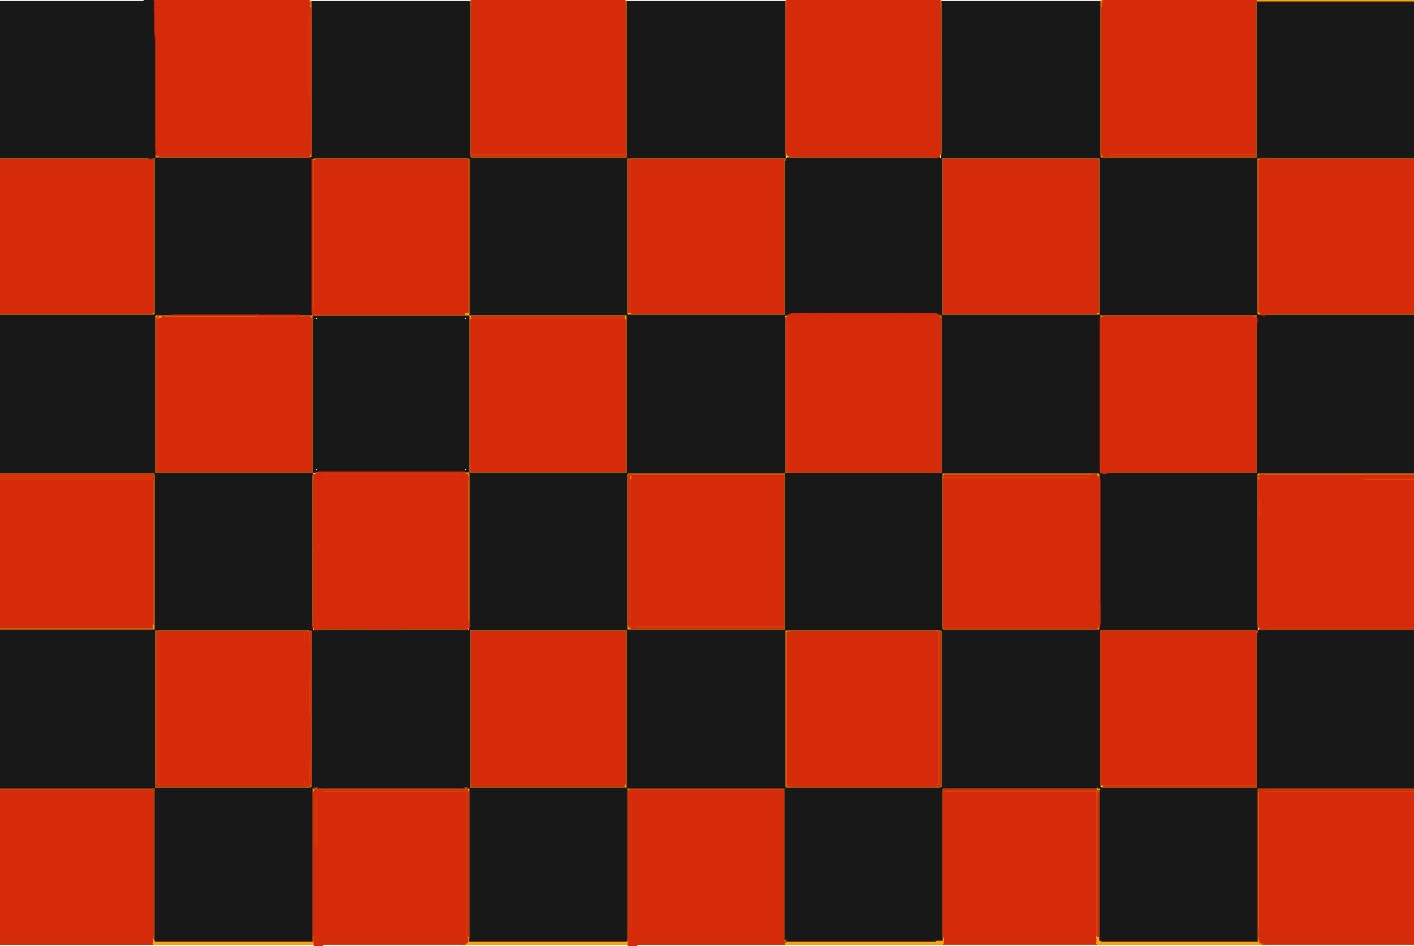 Schwarz rot. Черно оранжевый квадрат. Черный квадратик. Шахматное поле. Шахматная расцветка.